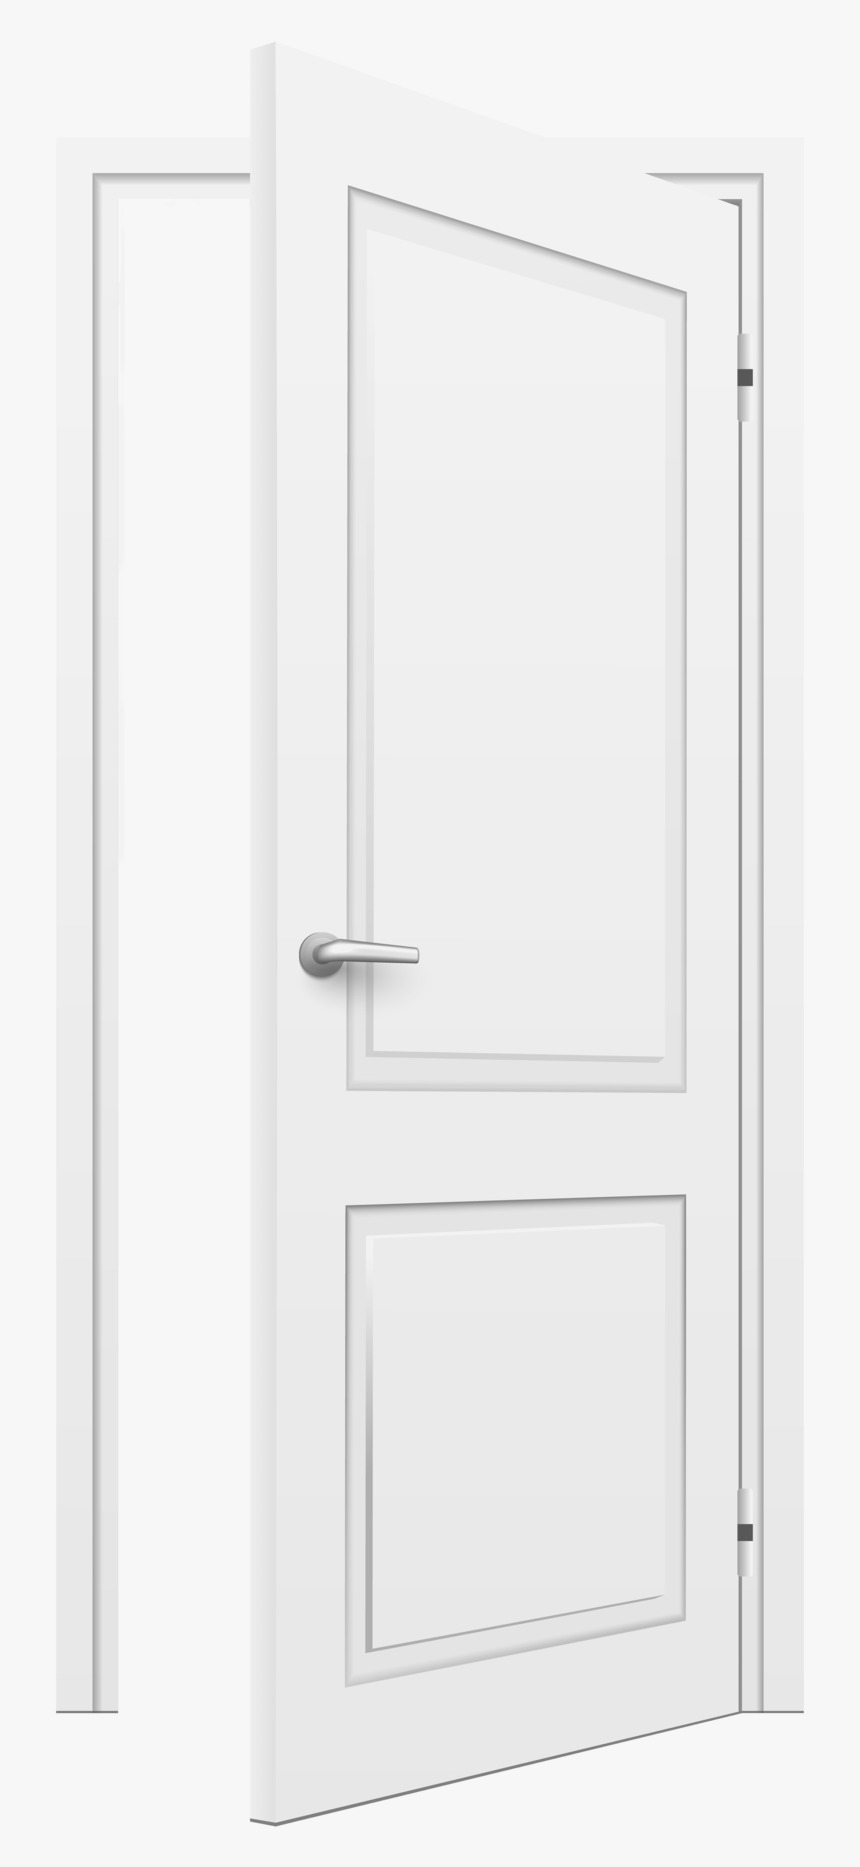 Open Door White - Open White Door Design, HD Png Download, Free Download